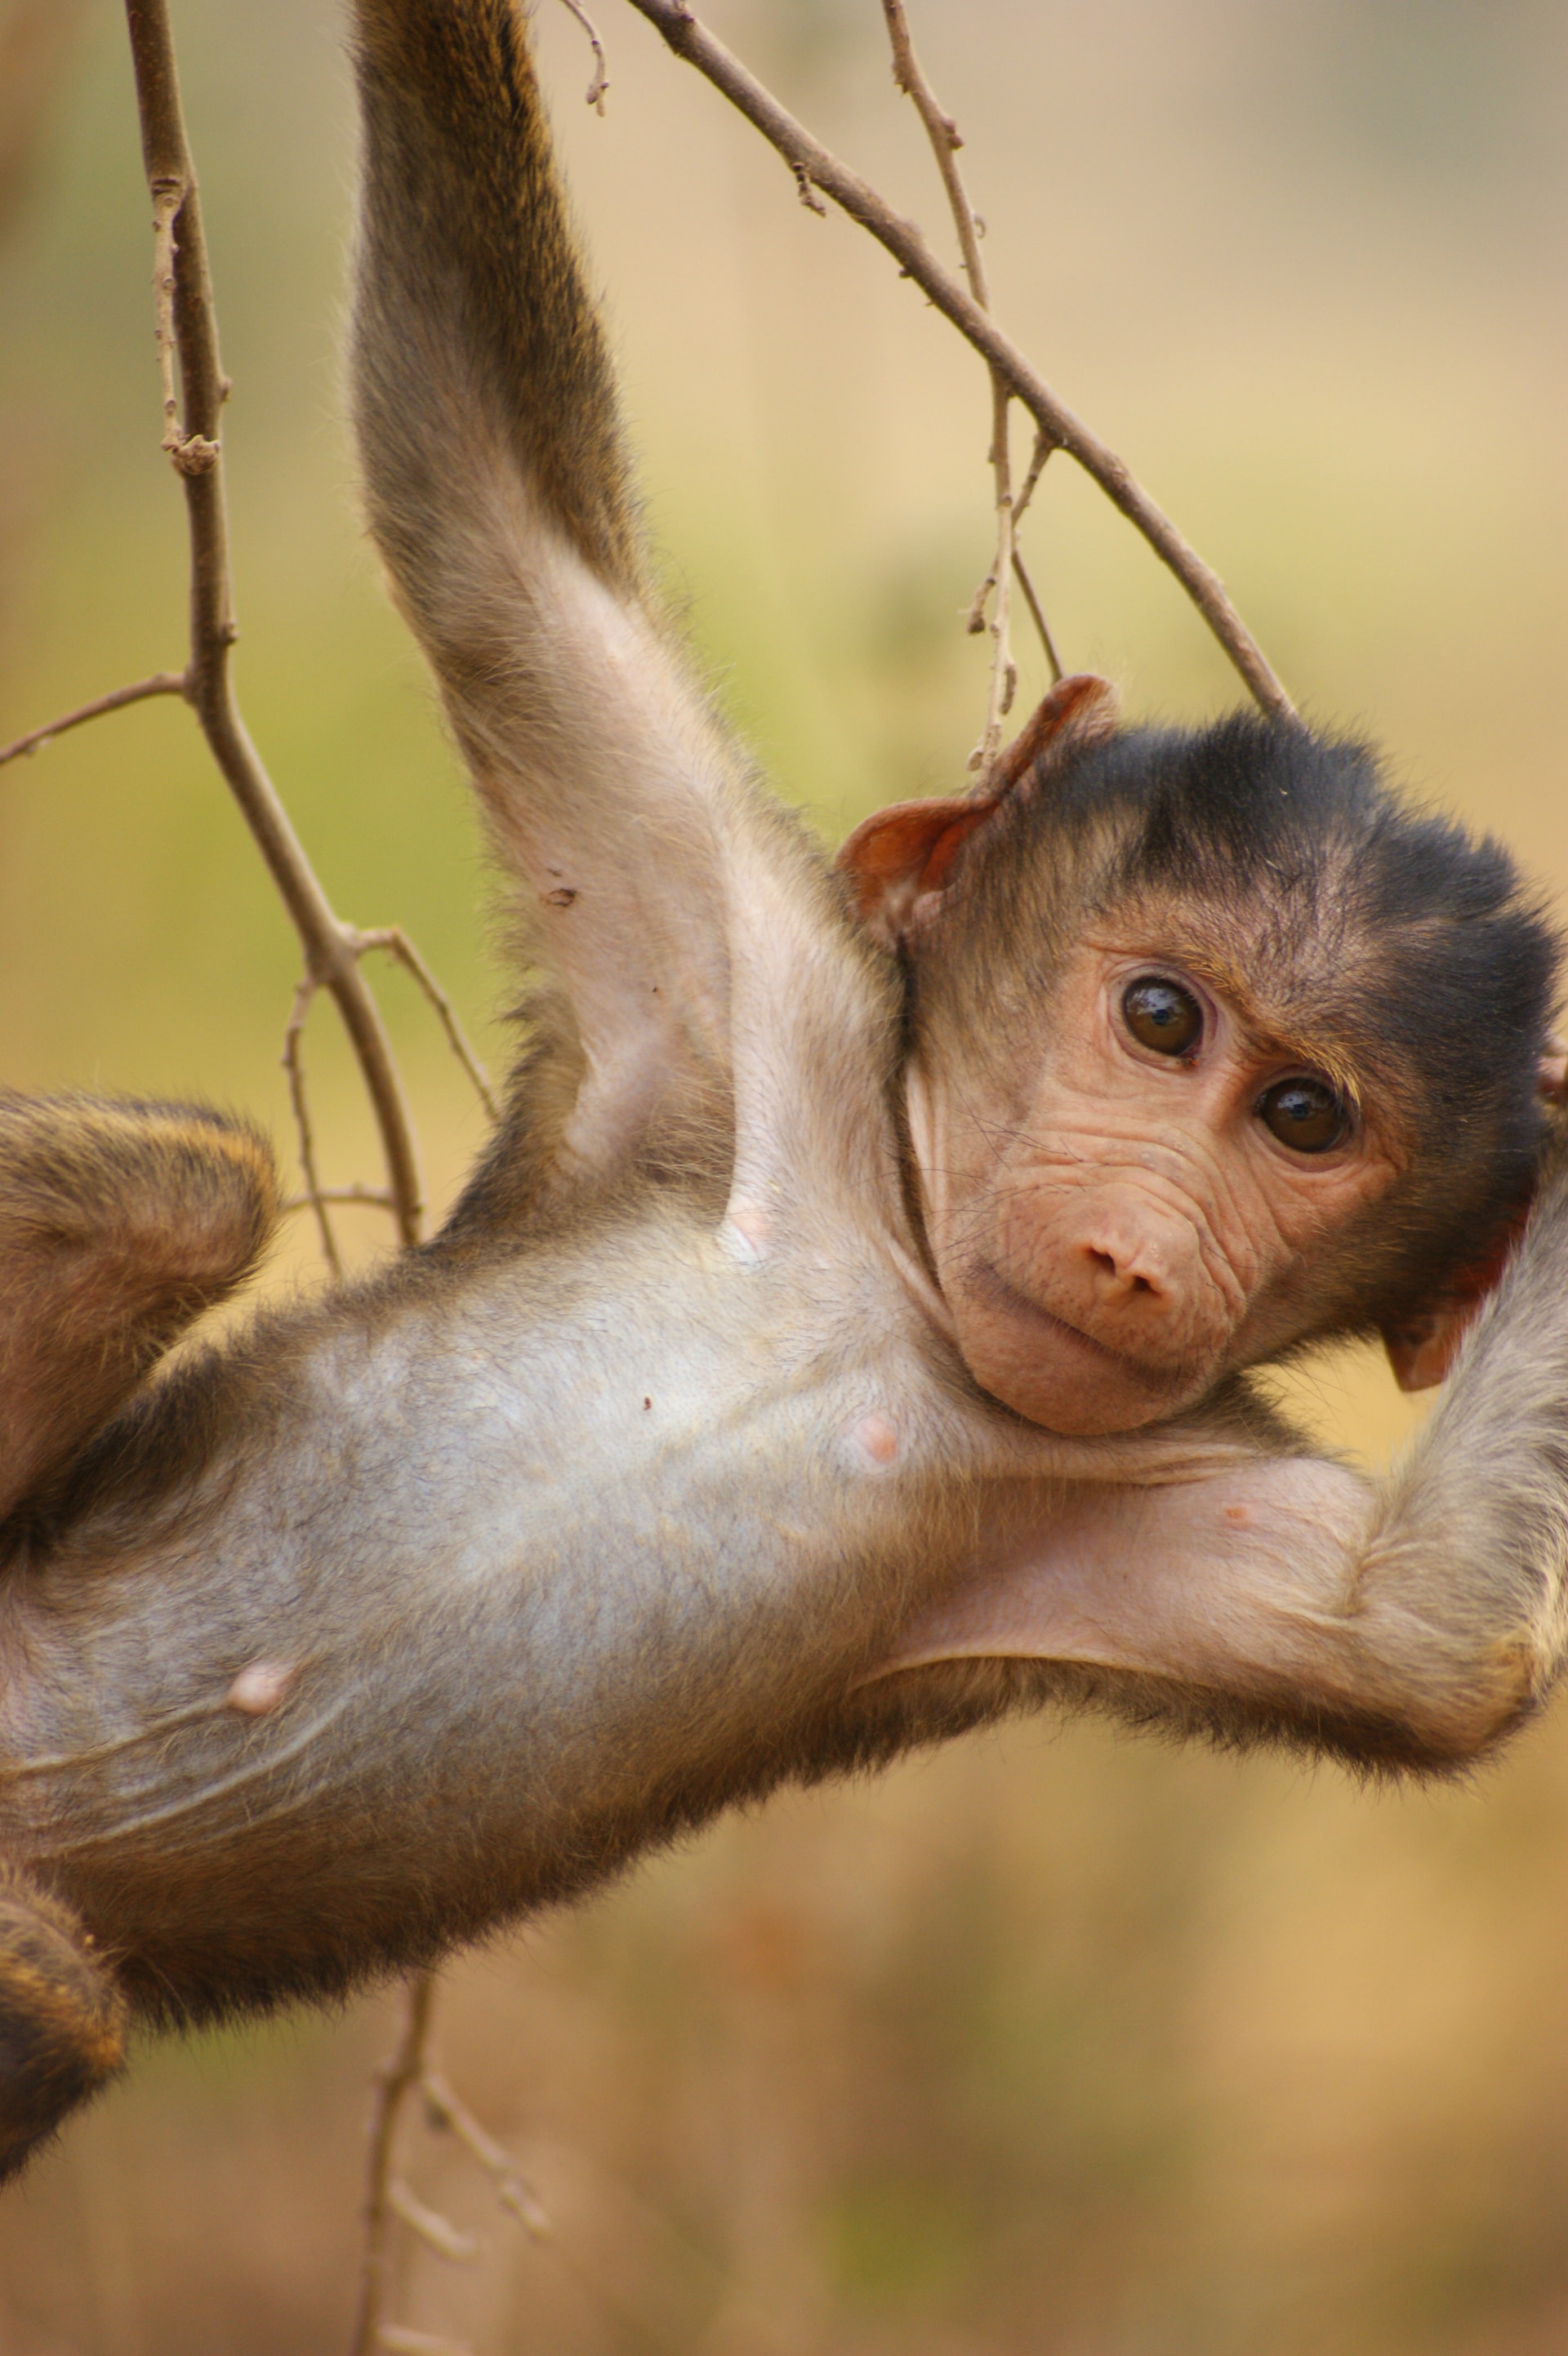 Con khỉ là những sinh vật đáng yêu và thông minh nhất. Xem những hình ảnh về chúng để thấy được sự tinh nghịch và đáng yêu của chúng.